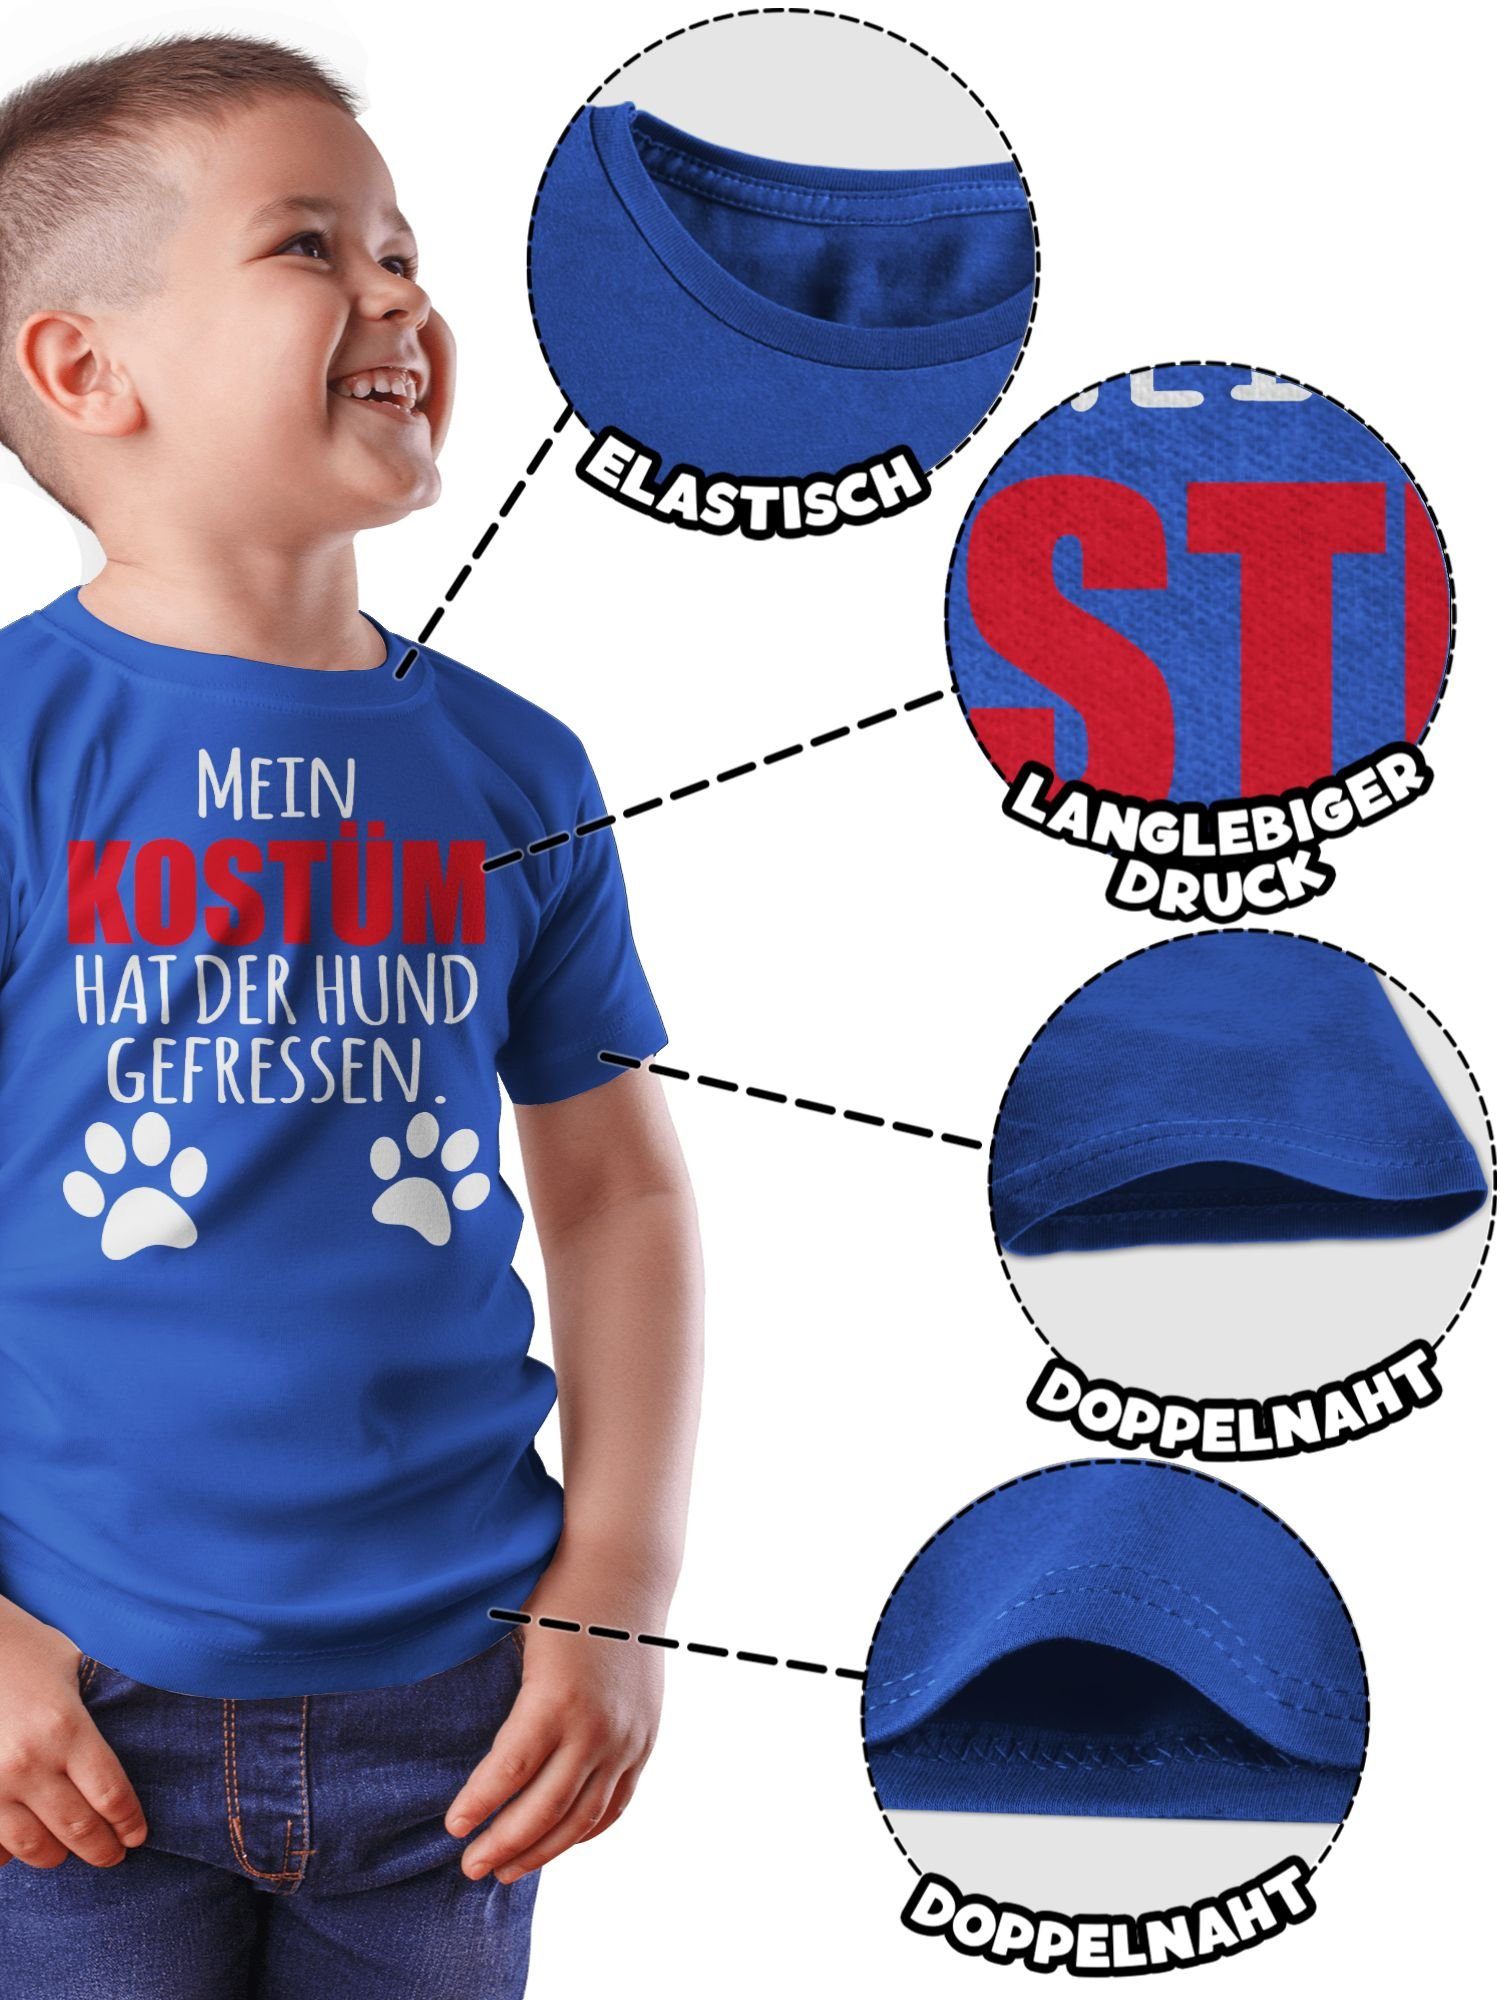 & Mein T-Shirt der Fasching 3 Dog gefressen - Hundekostüm hat Shirtracer Kostüm Hund Faschingskostüme Karneval Royalblau